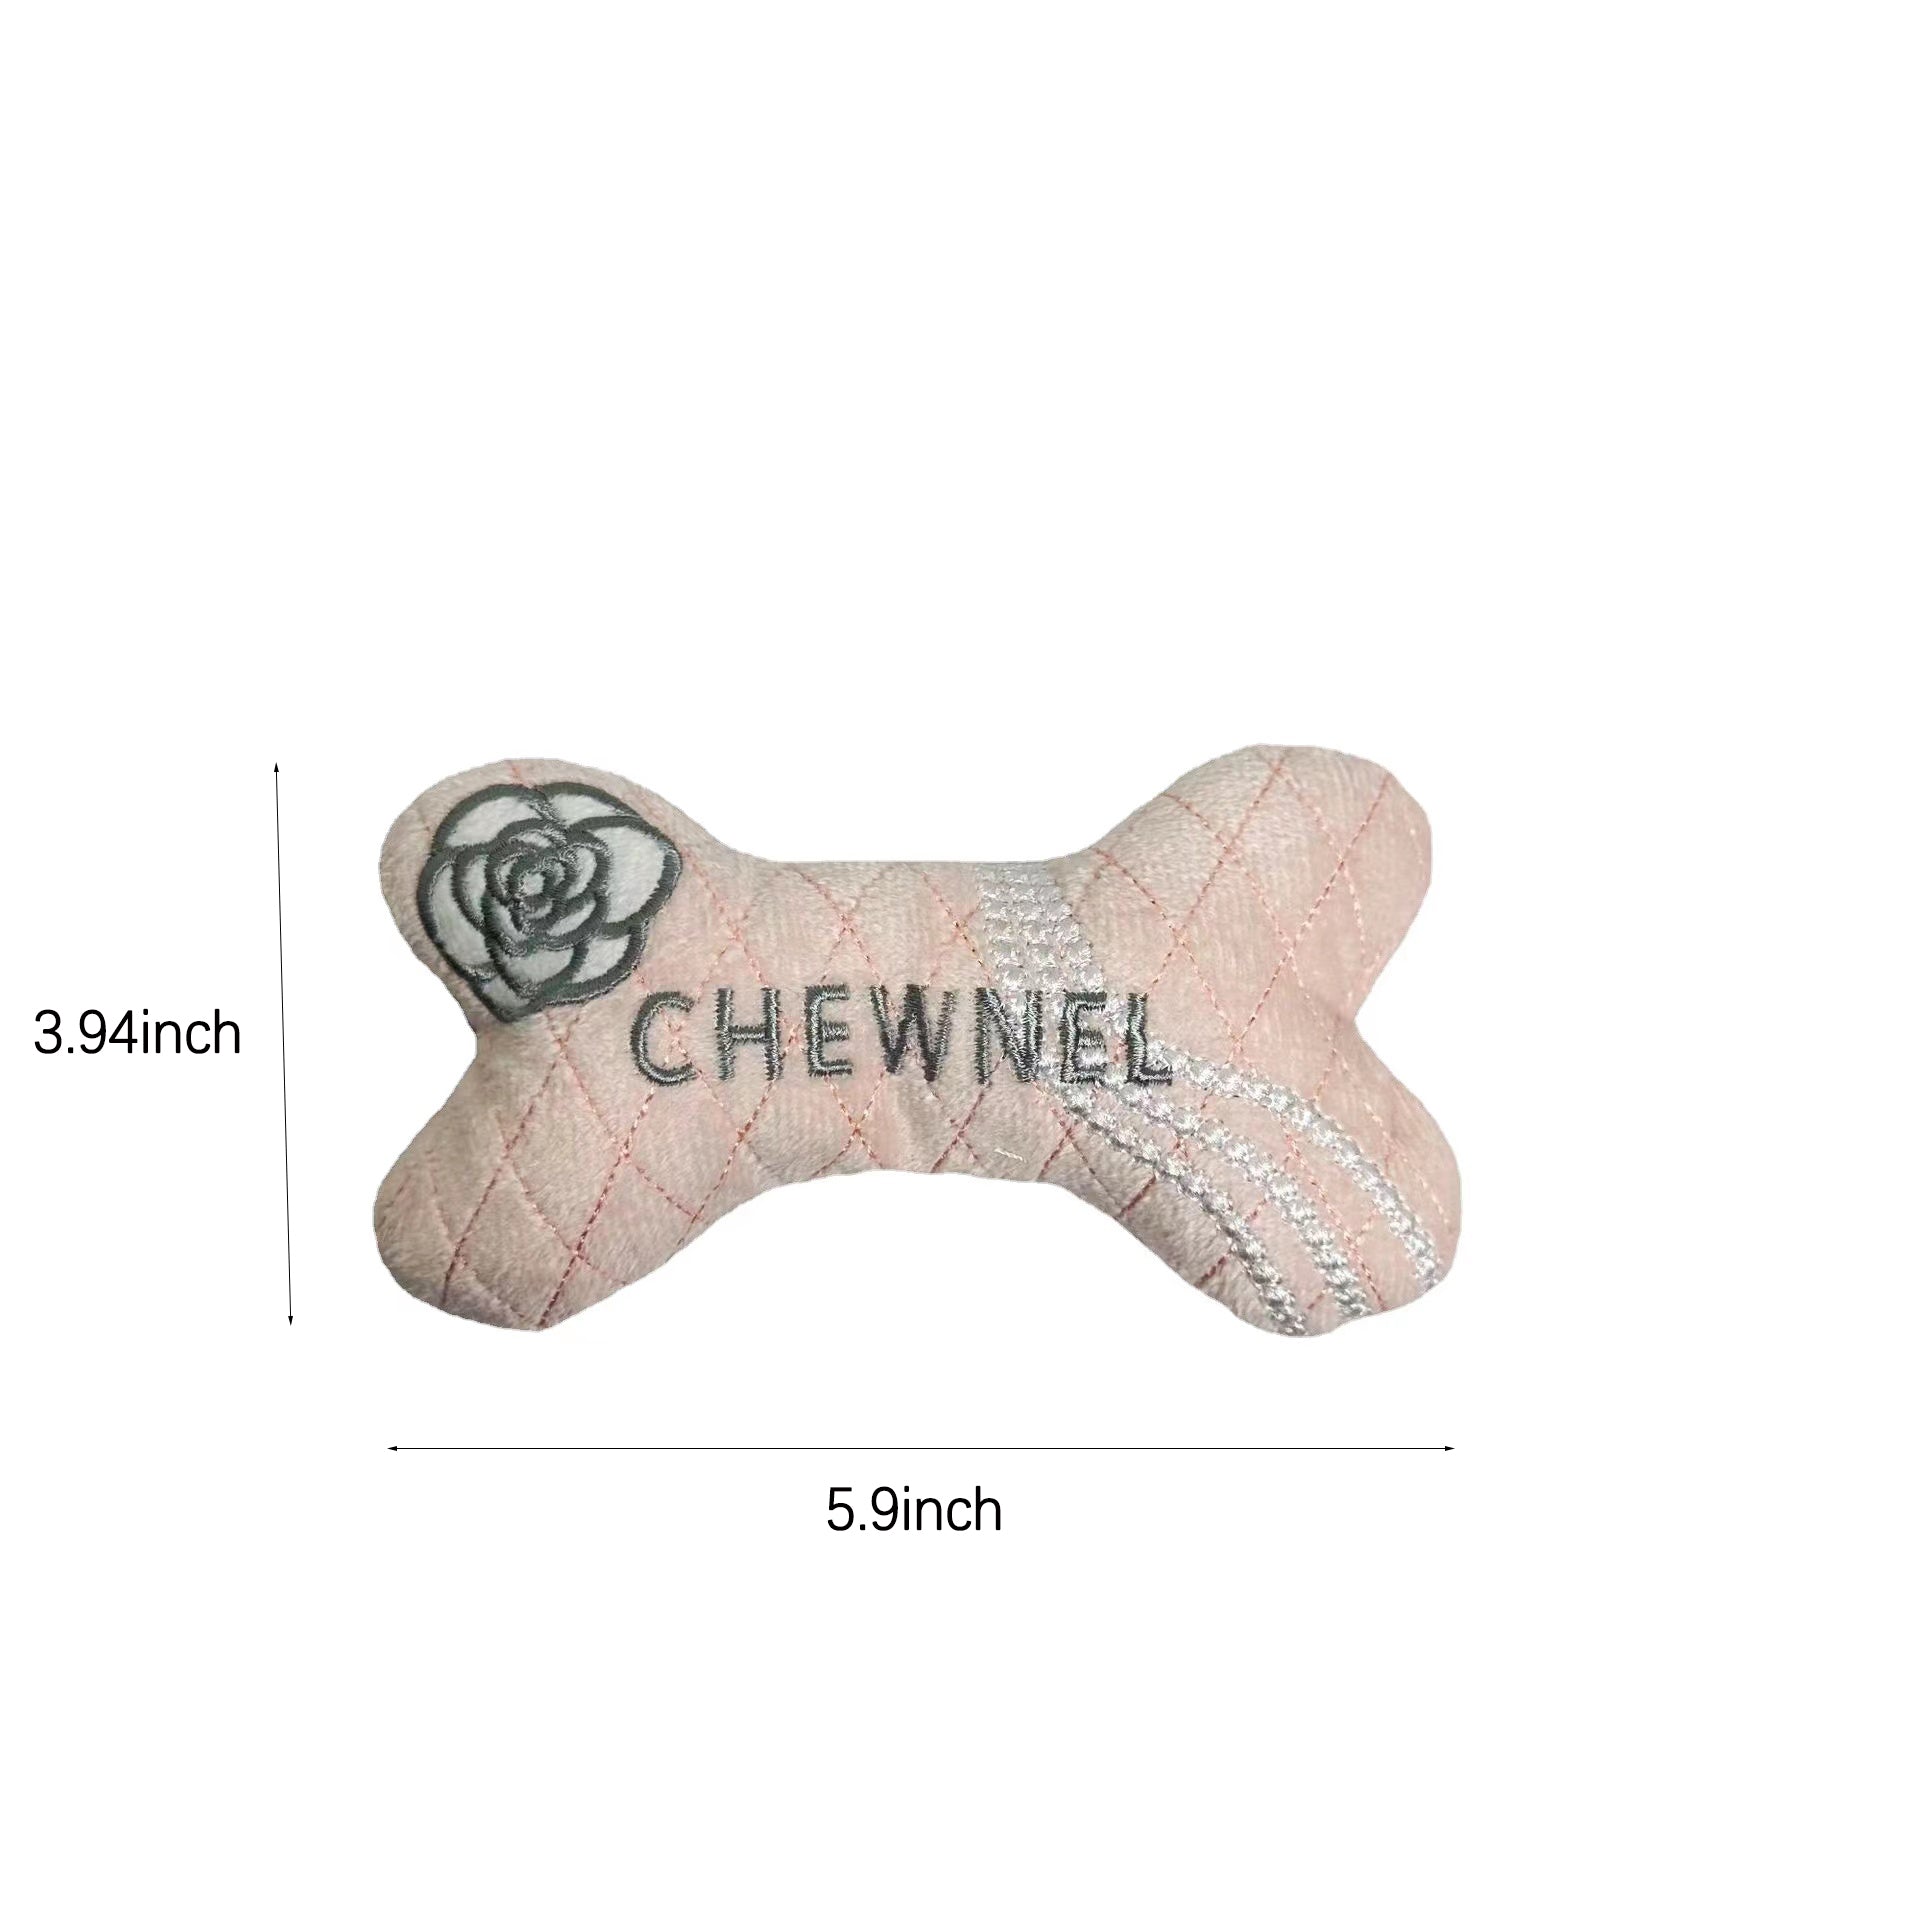 Chewnel Black Bone Toy – AK Prestige